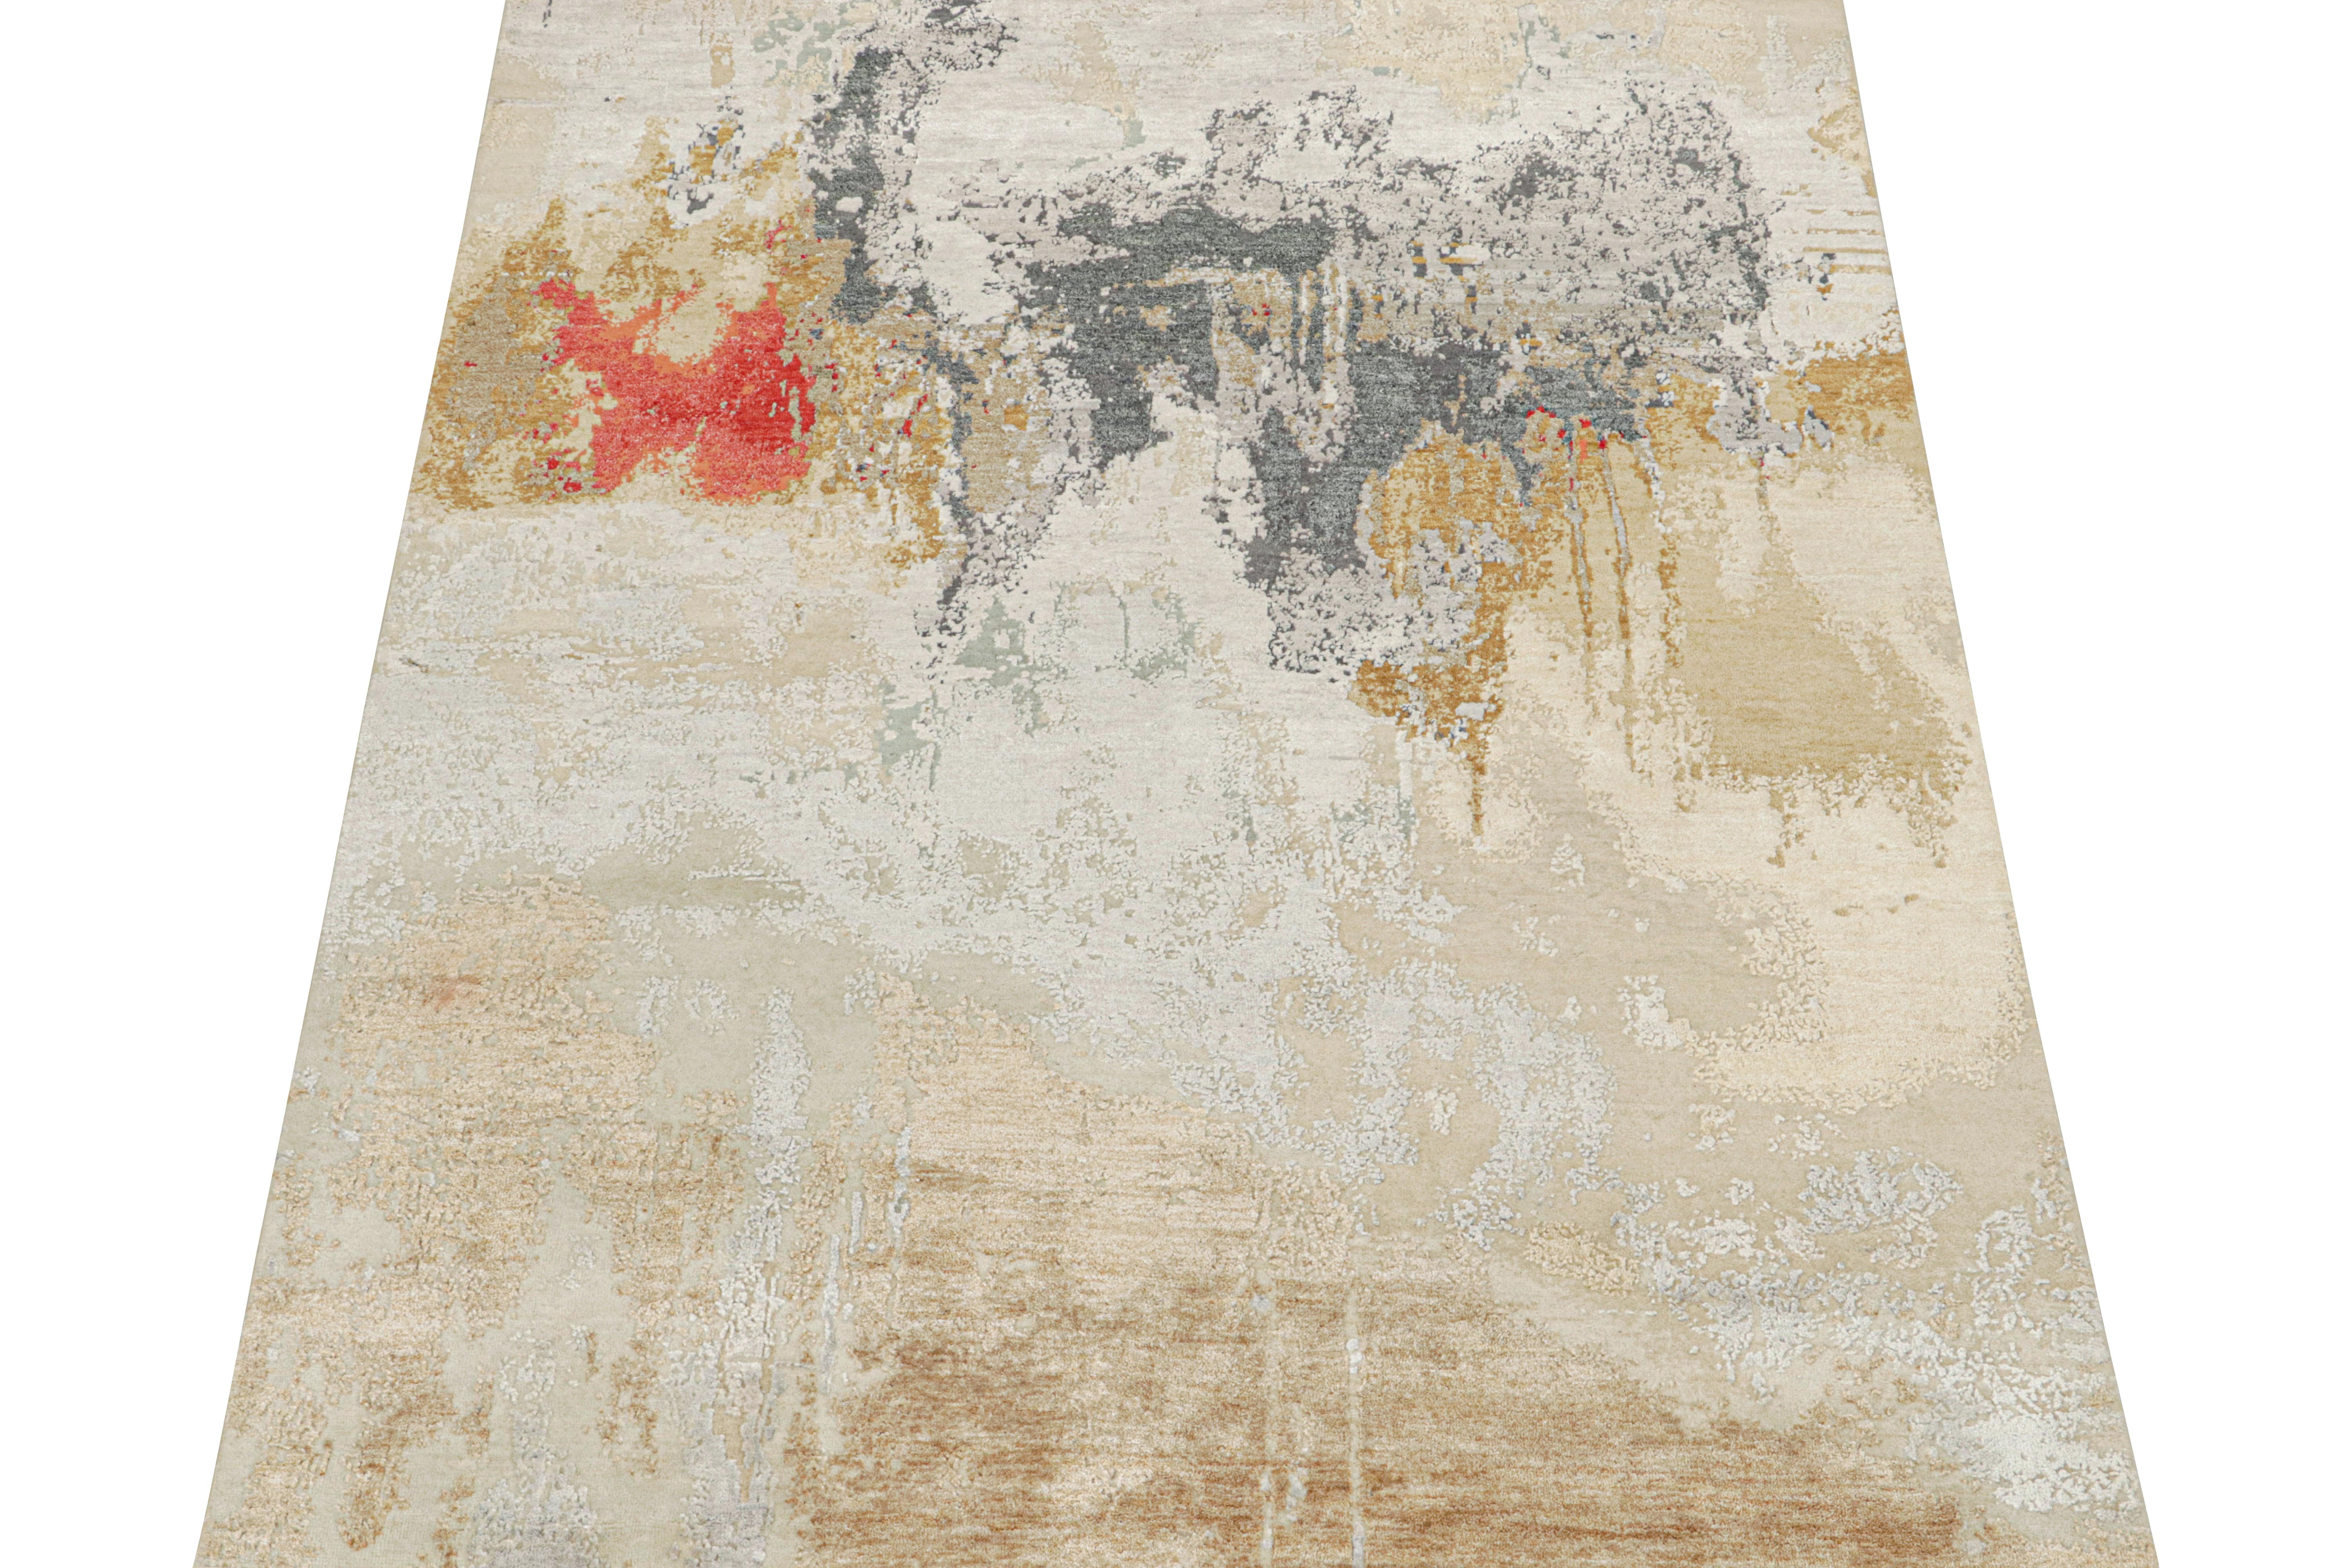 Ce tapis abstrait 6x8 est un nouvel ajout à la collection de tapis contemporains de Rug & Kilim. 

Noué à la main dans de la laine, du coton et de la soie, son design est animé par des touches de beige-brun, de gris, d'or et de rouge. Les yeux